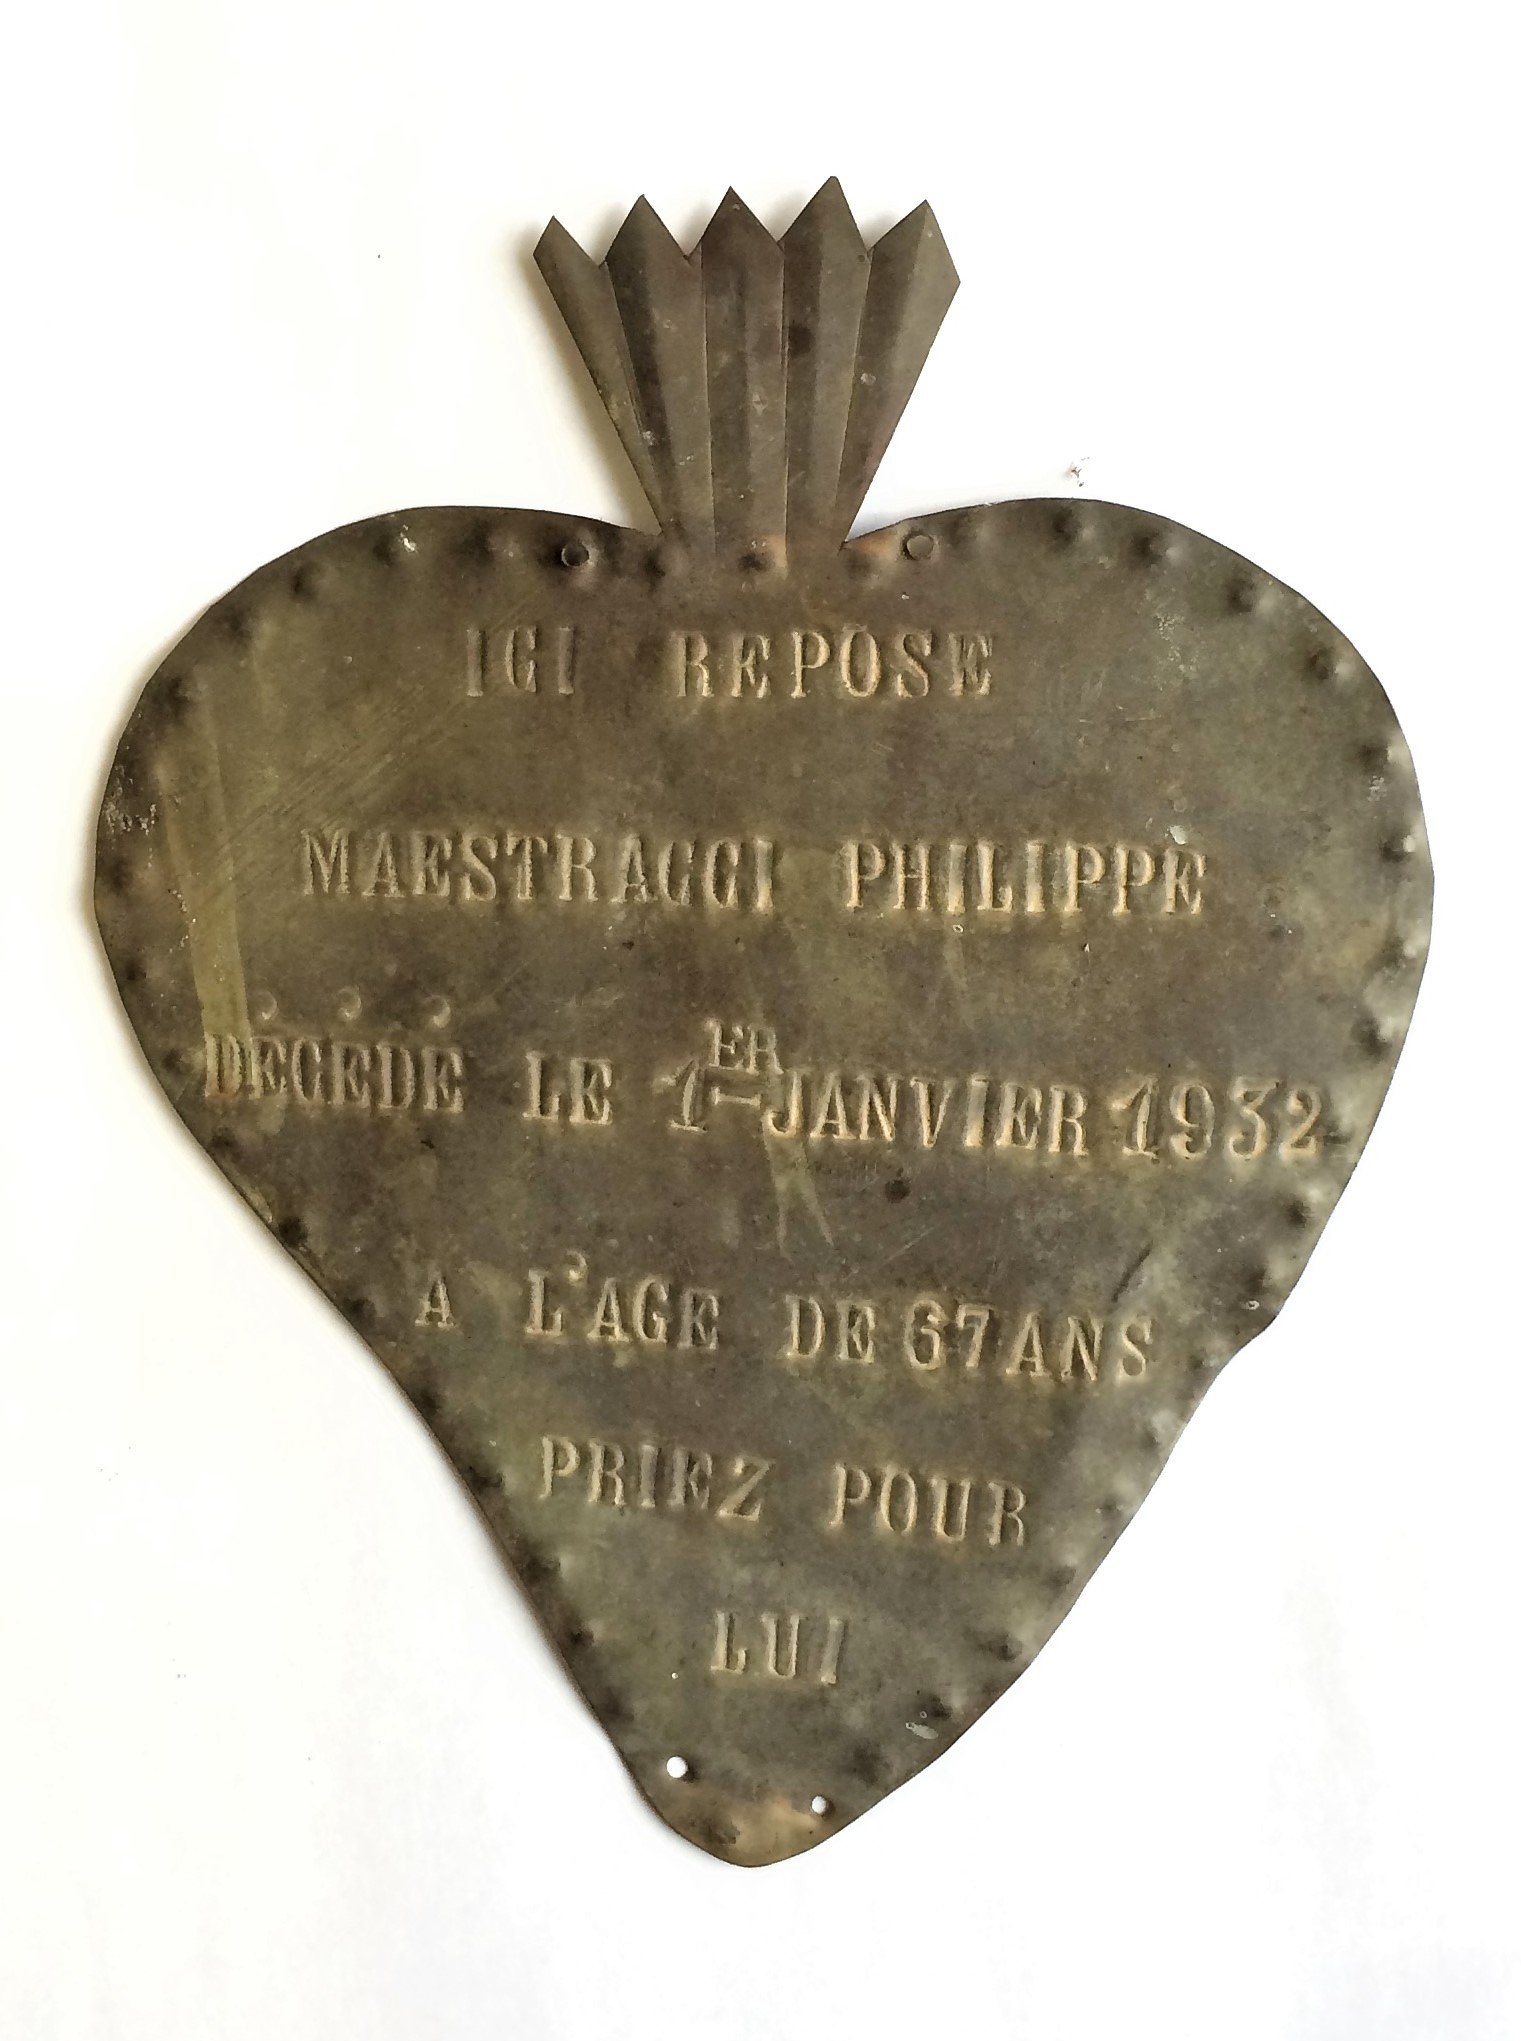 Grabschild "Maestracci Philippe" († 1932) (Museum für Sepulkralkultur CC BY)